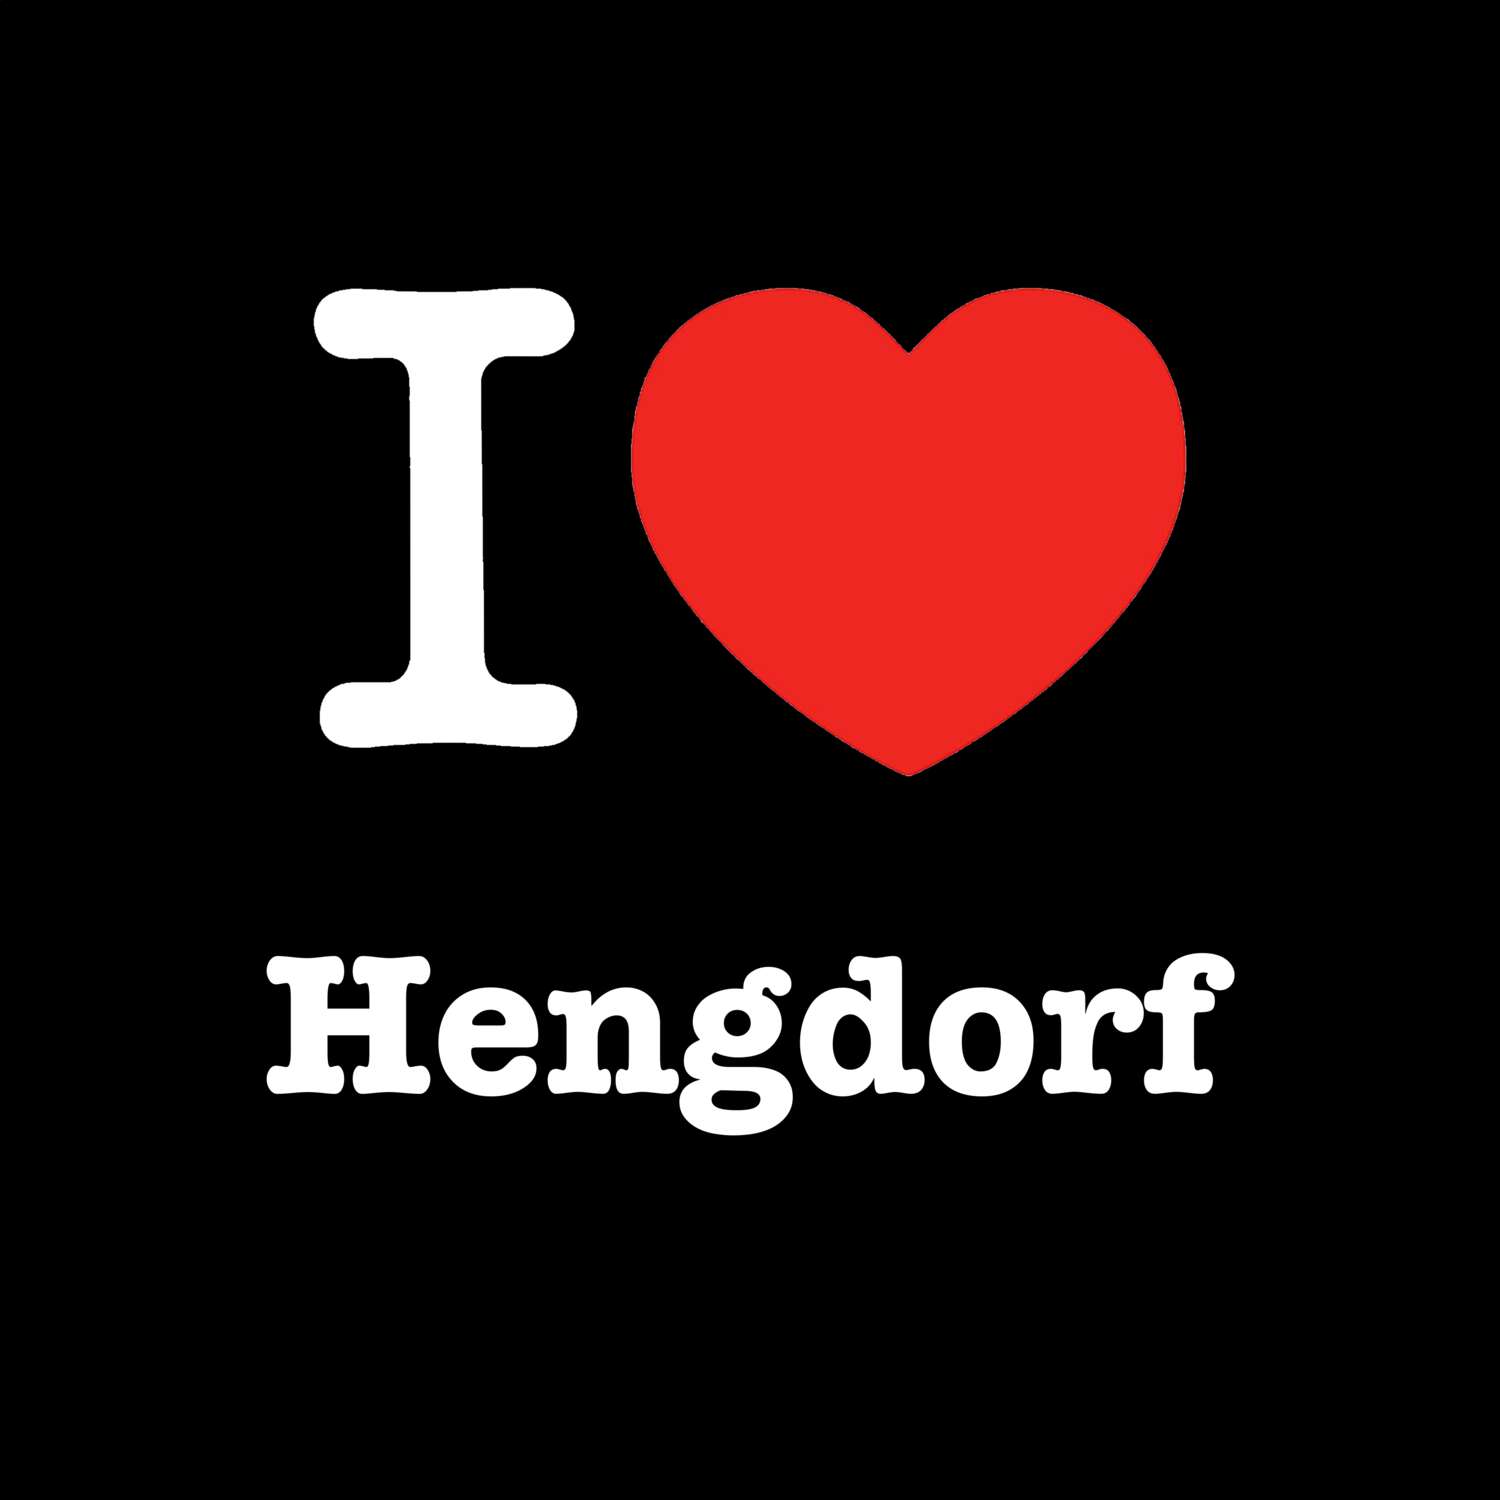 Hengdorf T-Shirt »I love«